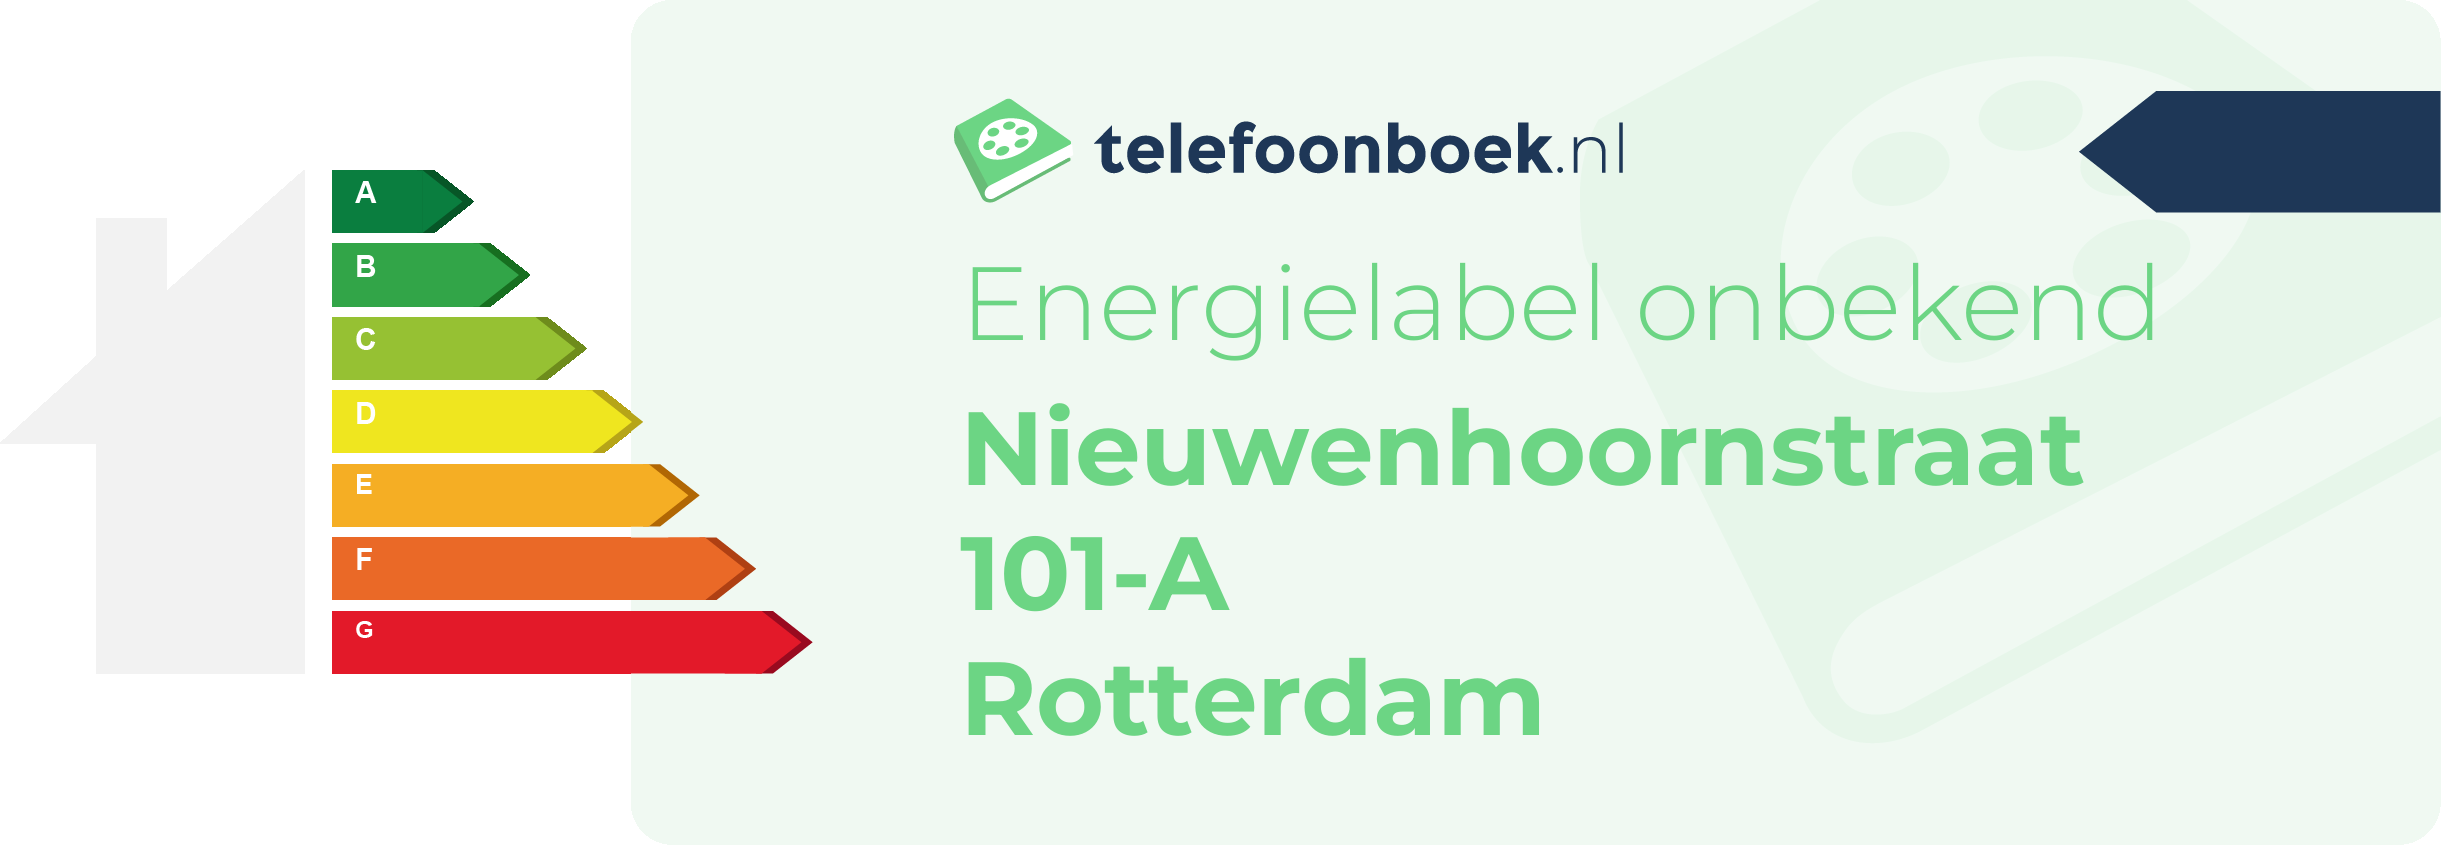 Energielabel Nieuwenhoornstraat 101-A Rotterdam